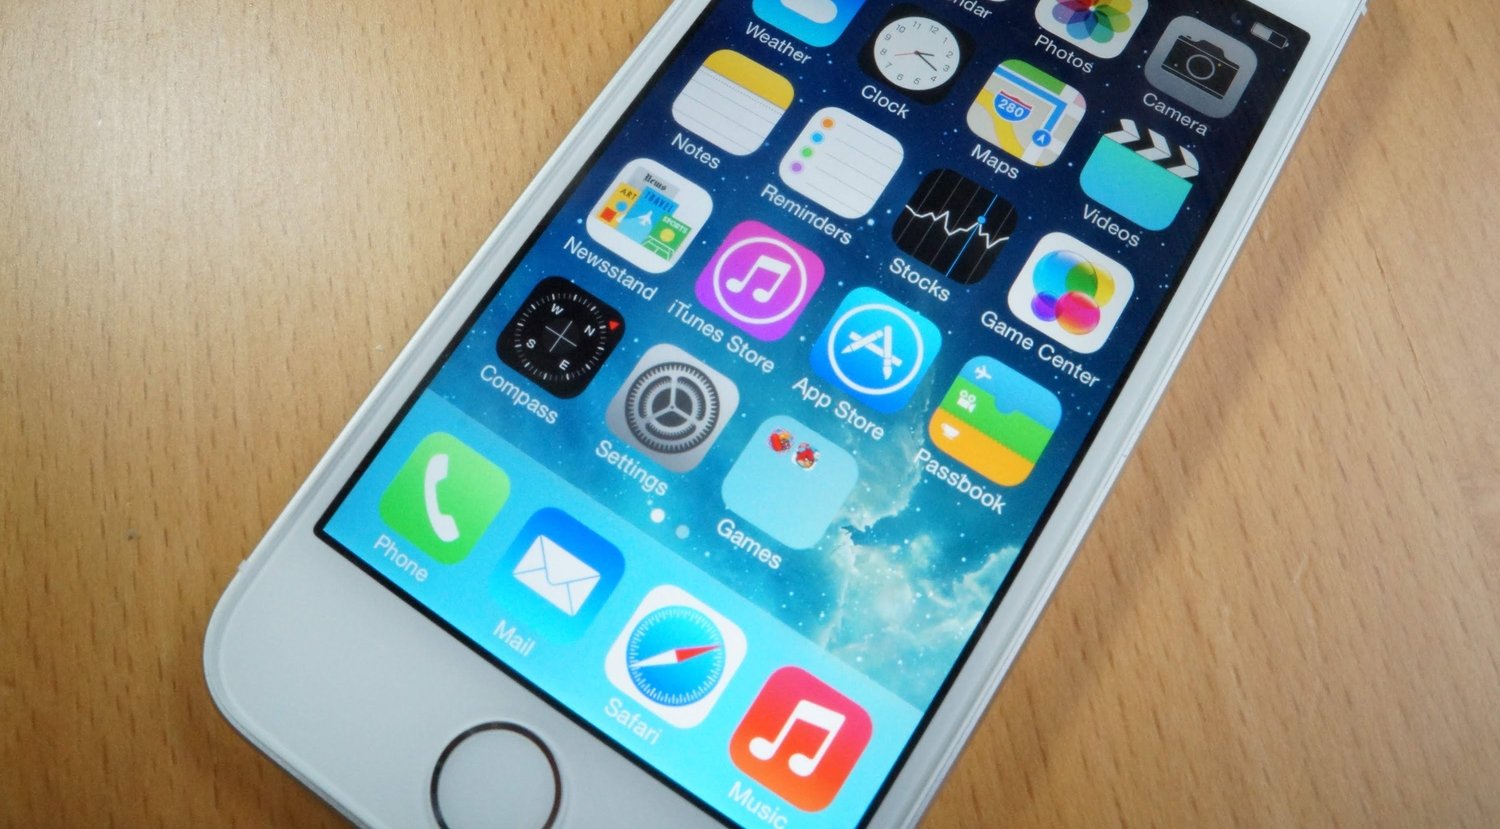 Hogyan teljesít az iPhone 5s a teljesítménycsökkentő szoftverrel? A videóból kiderül